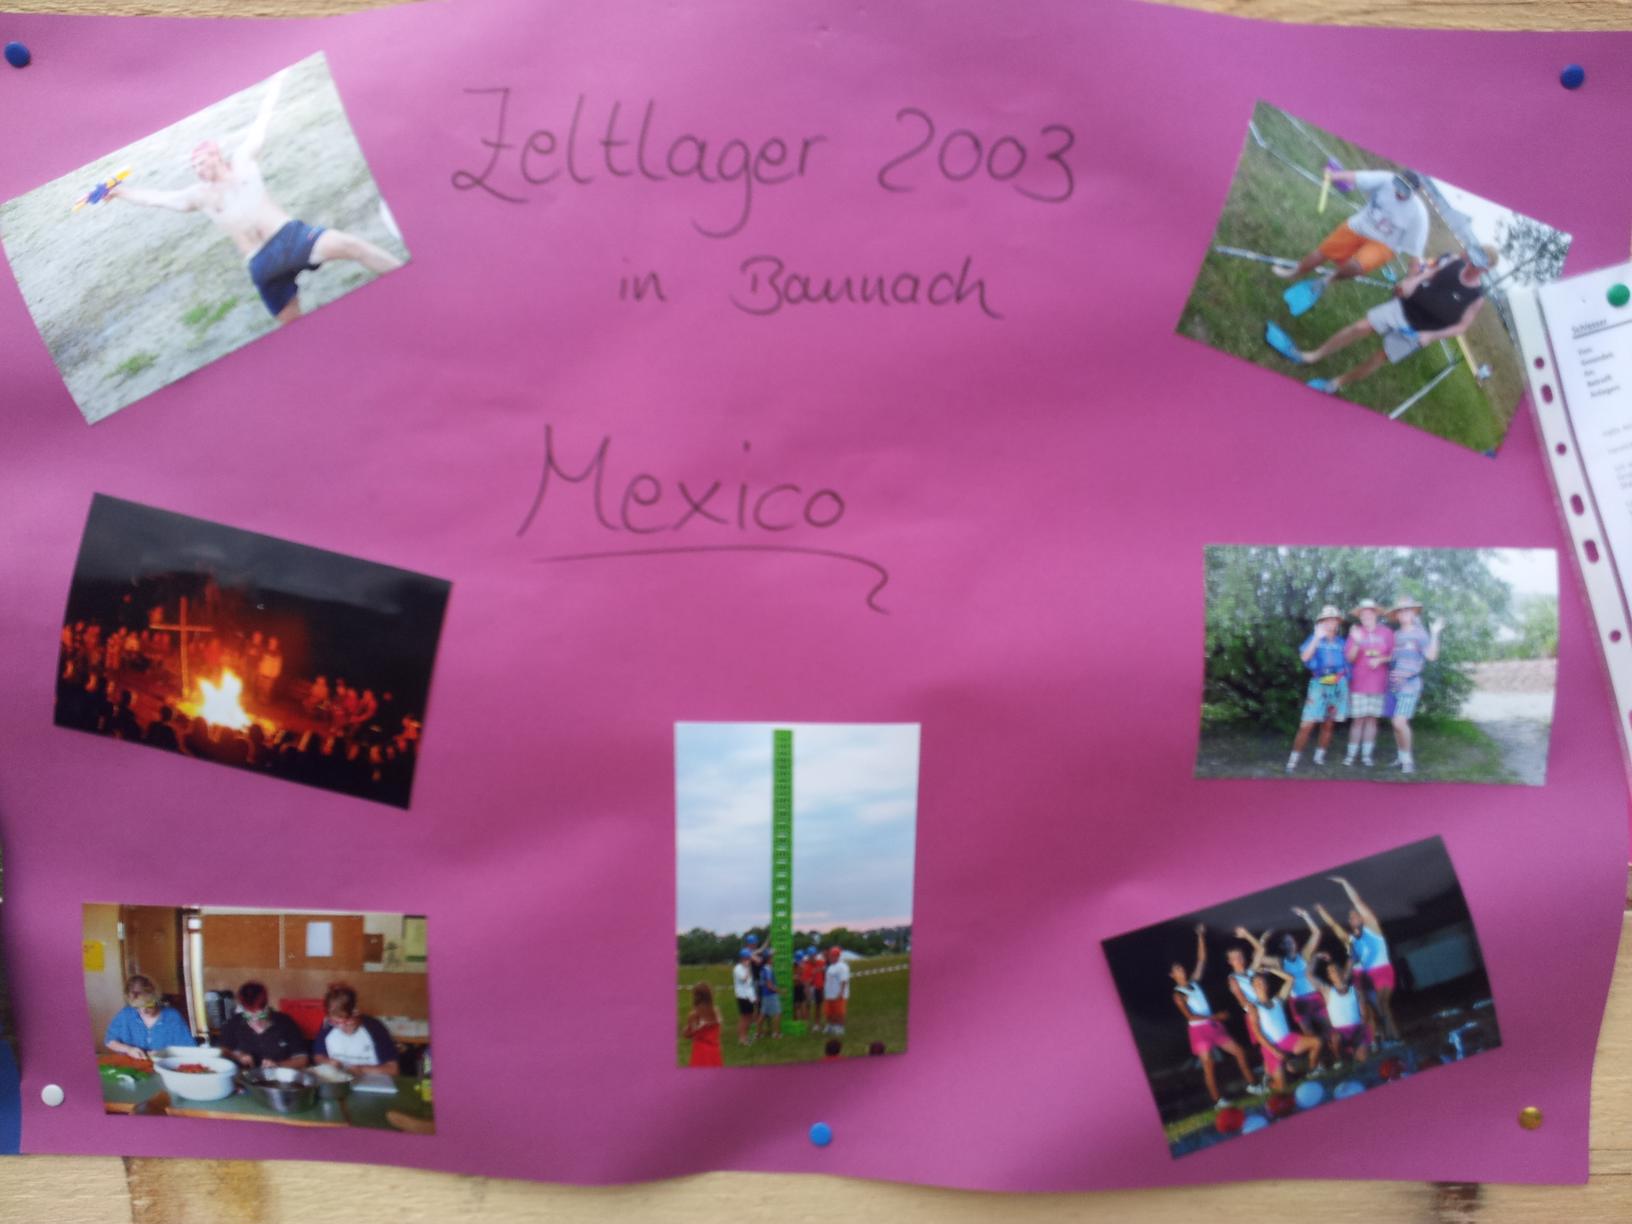 Zeltlager 2003 in Baunach